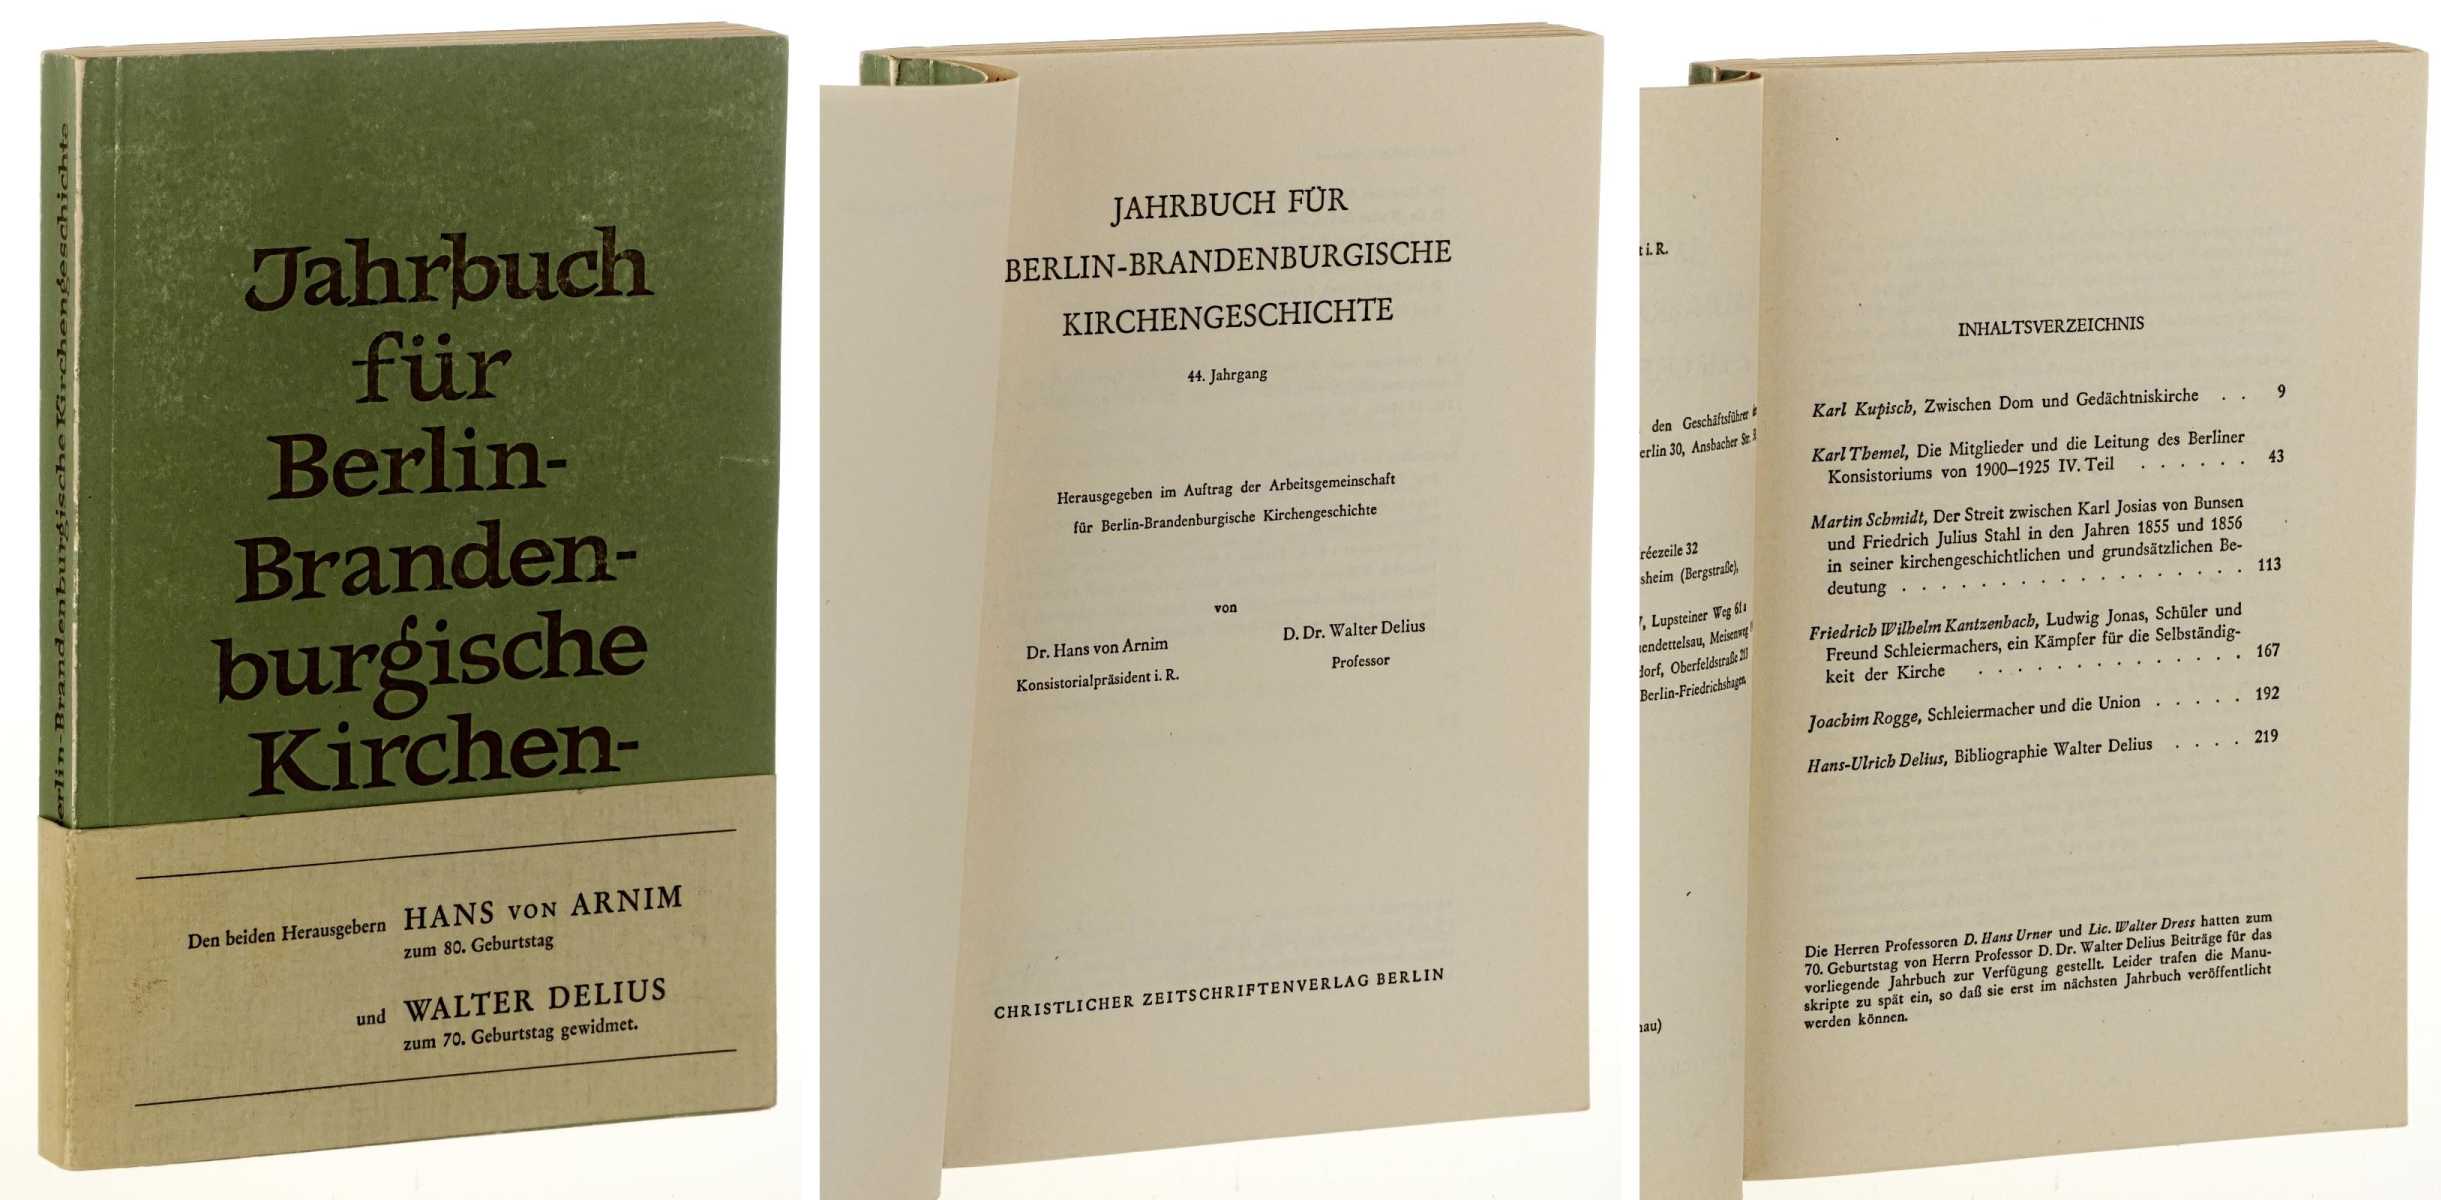   Jahrbuch für Berlin-Brandenburgische Kirchengeschichte, Jahrgang 44 (1969). Hrsg. v. Hans von Arnim und Walter Delius. [Den Herausgebern gewidmet]. 